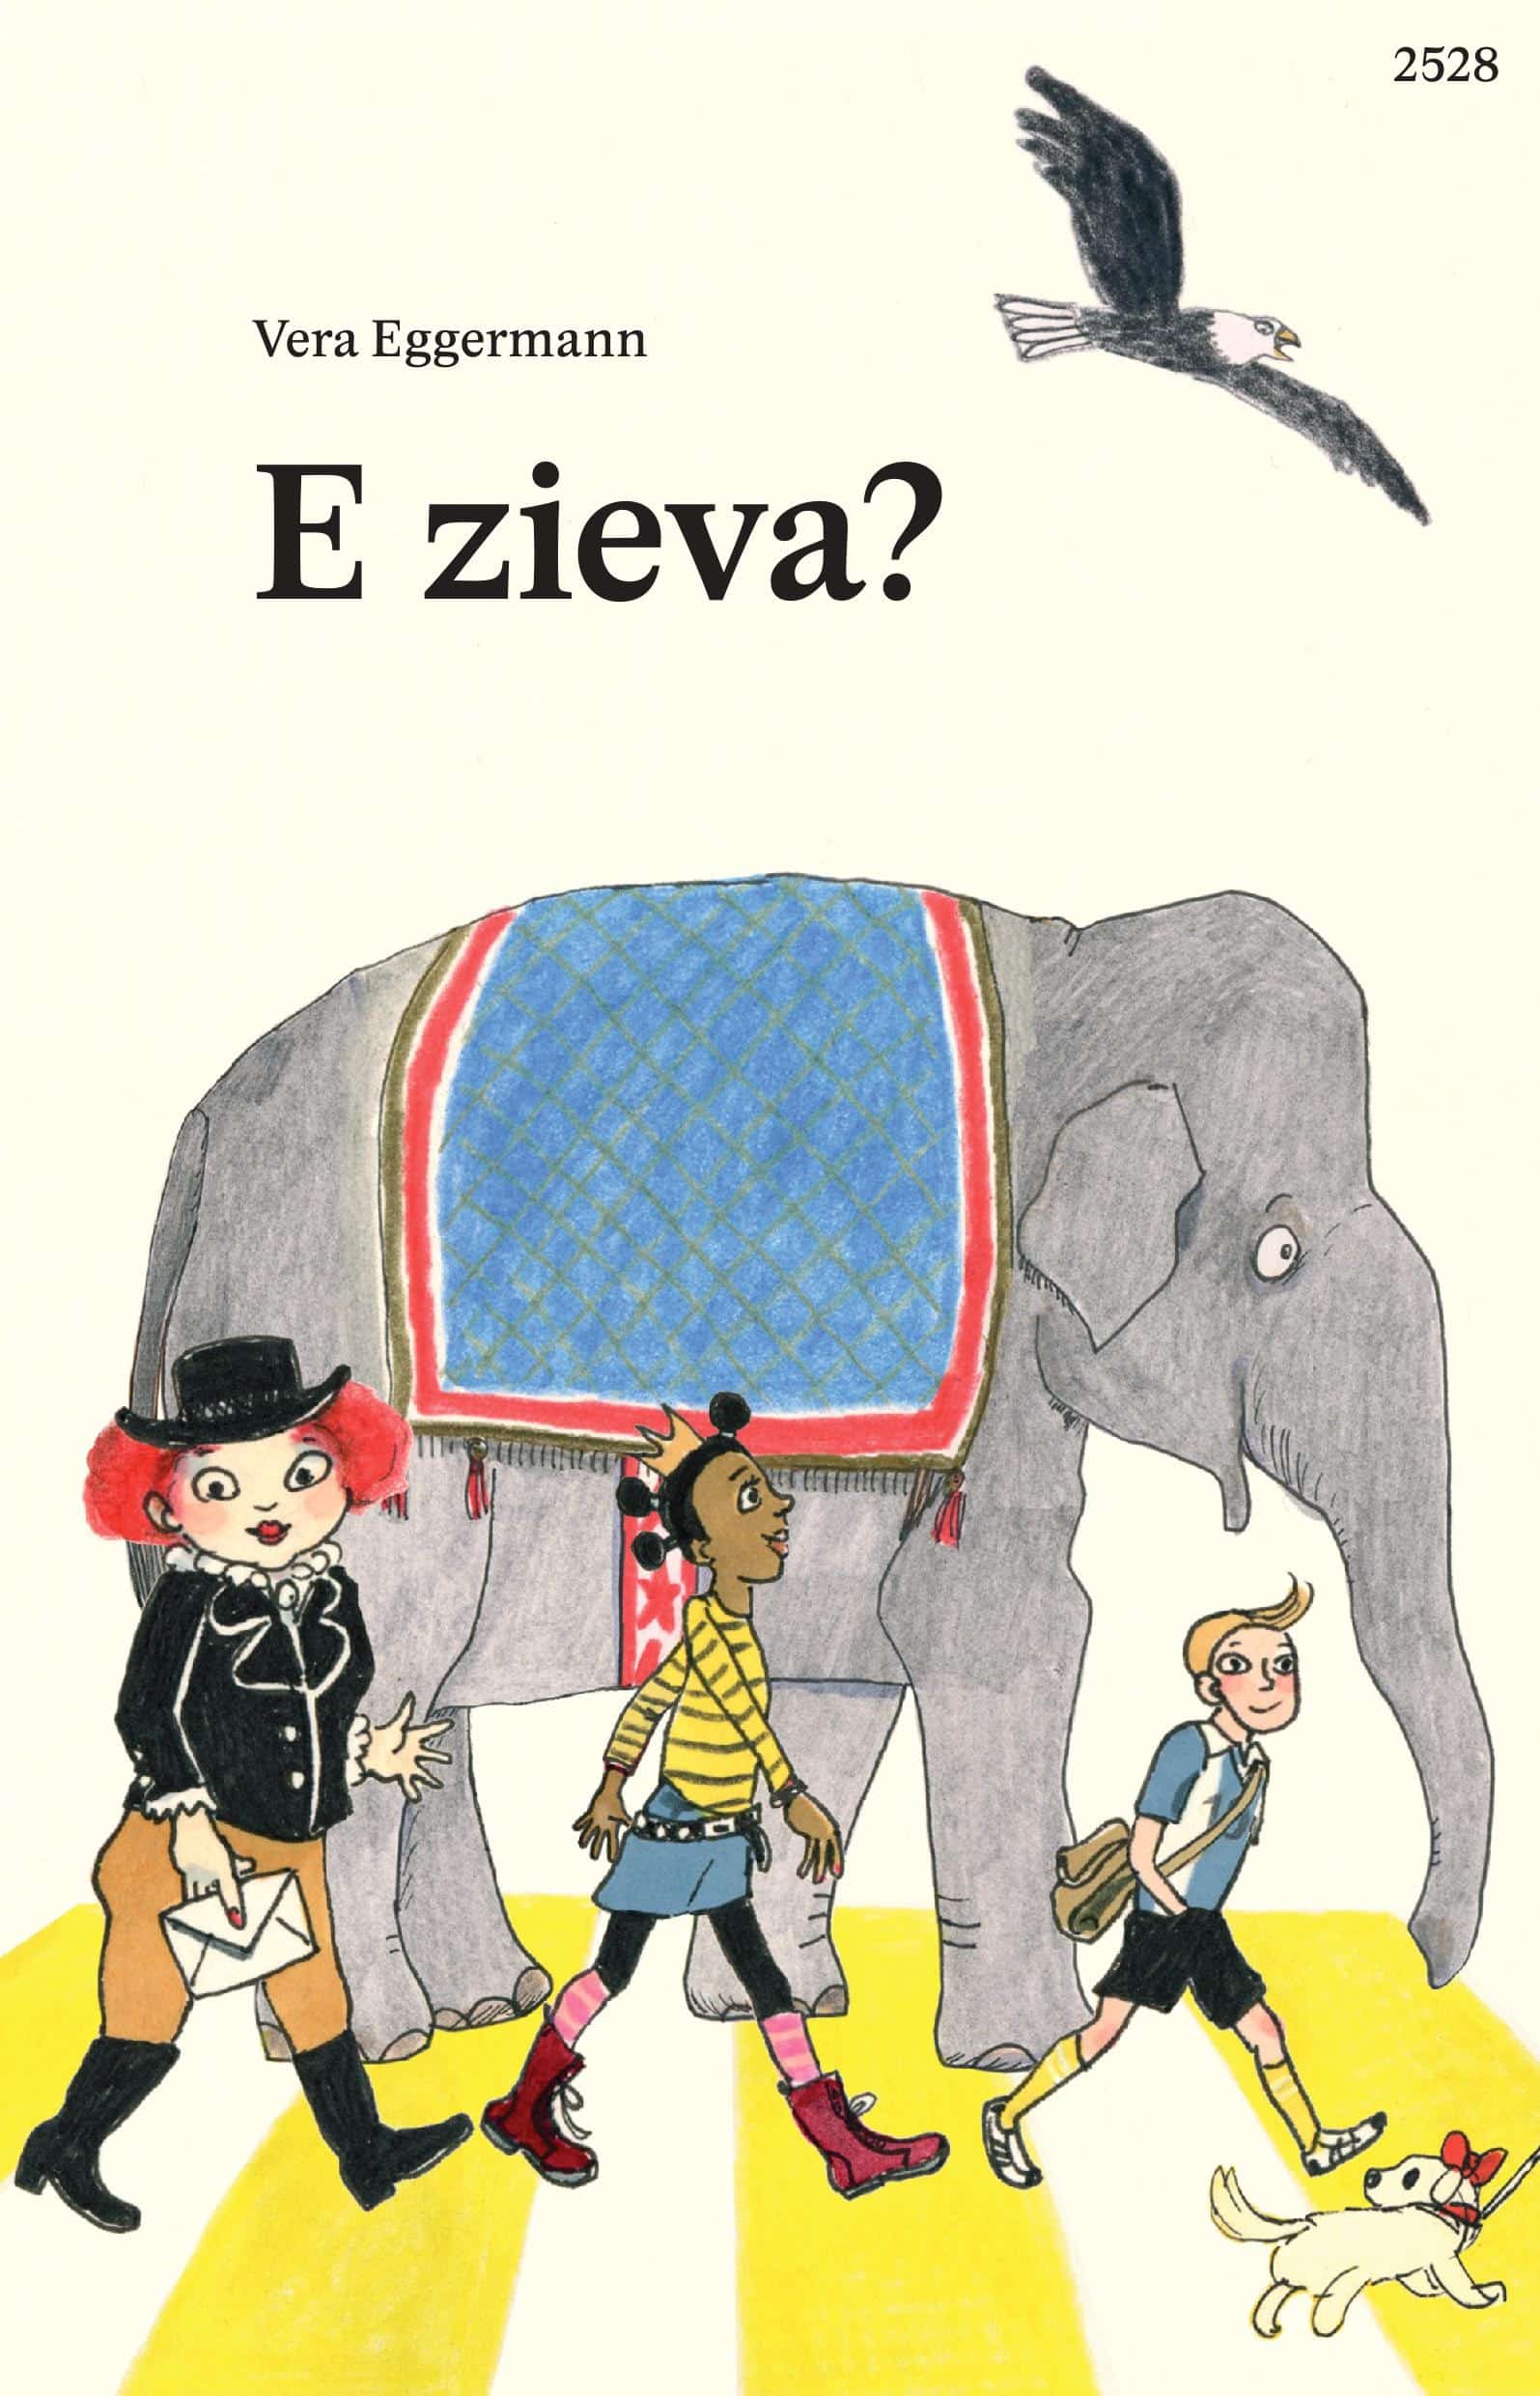 E zieva?, ein Kinderbuch von Vera Eggermann, SJW Verlag, Erstlesetext, Fantasy